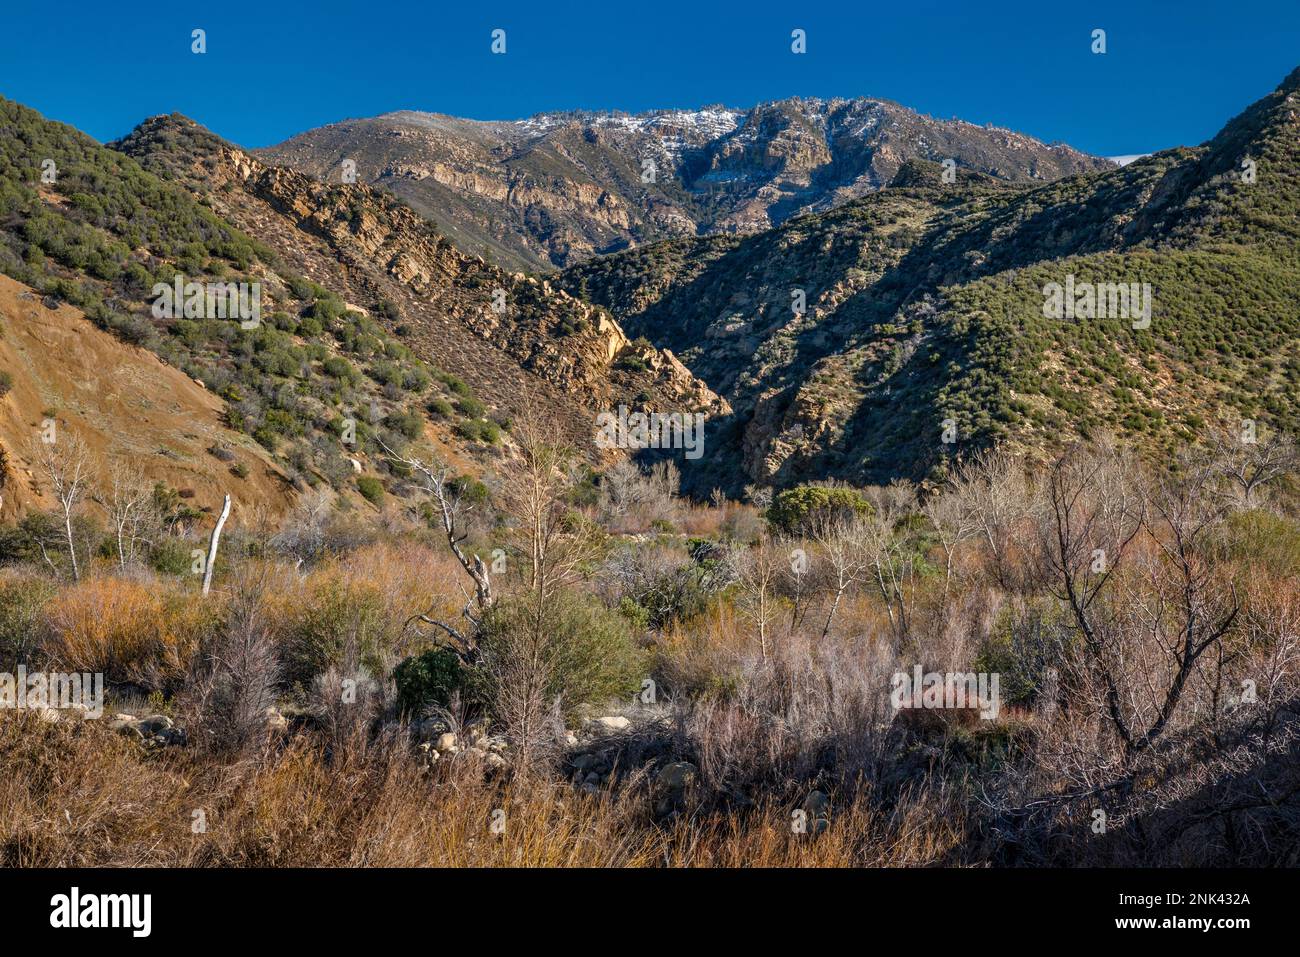 Pine Mountain, Sespe Gorge, Blick vom Maricopa Highway, Los Padres National Forest, Ventura Ranges, Transverse Ranges, in der Nähe von Ojai, Kalifornien, USA Stockfoto